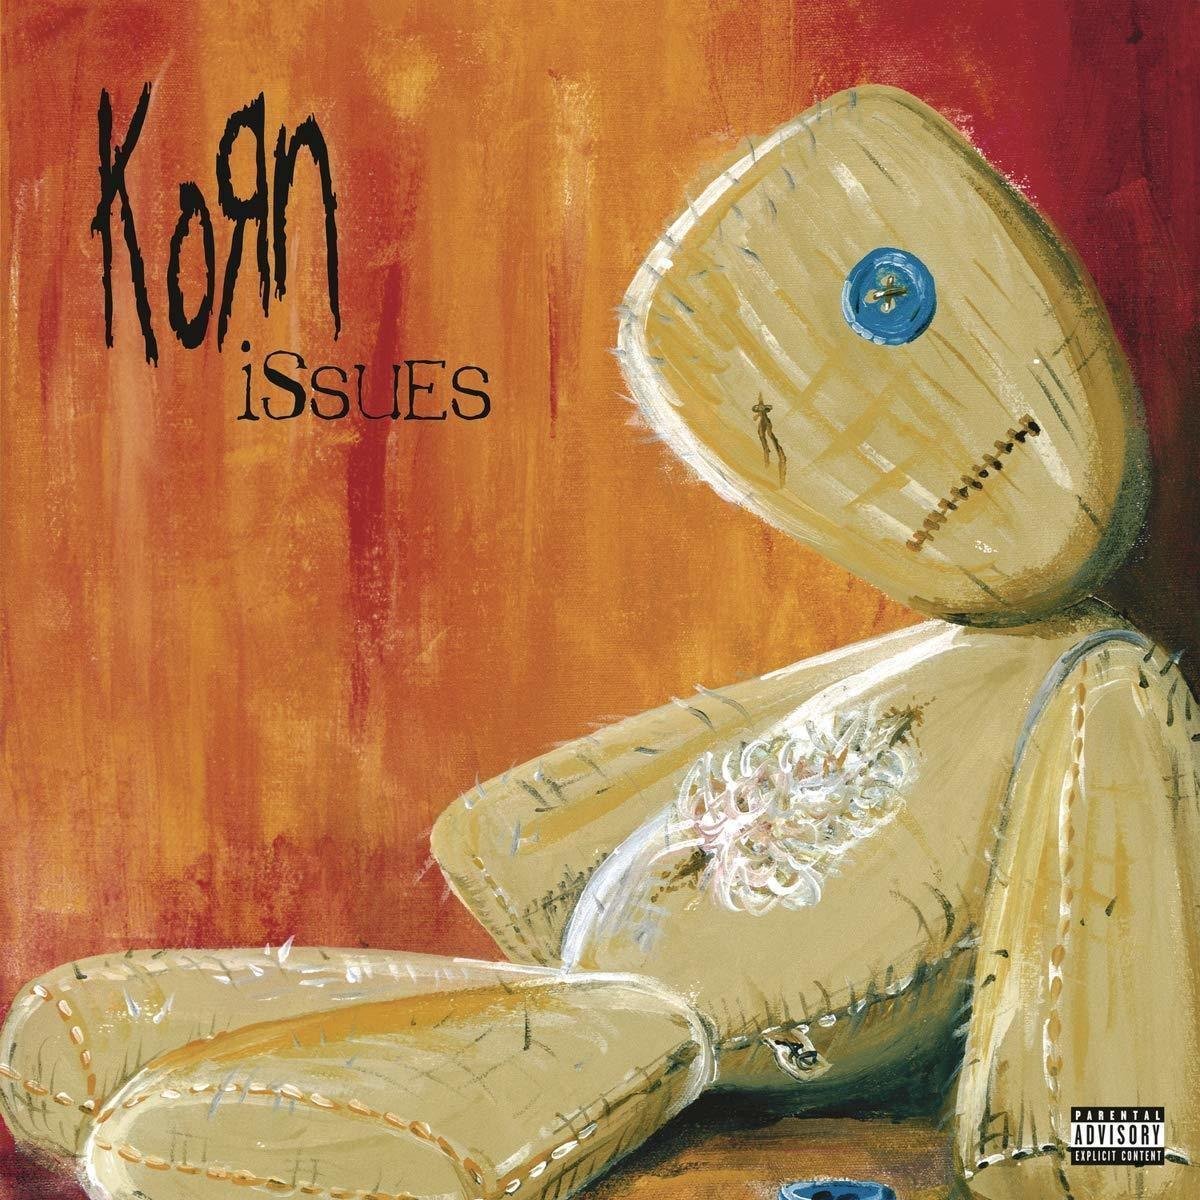 Korn Issues (2 LP) Korn